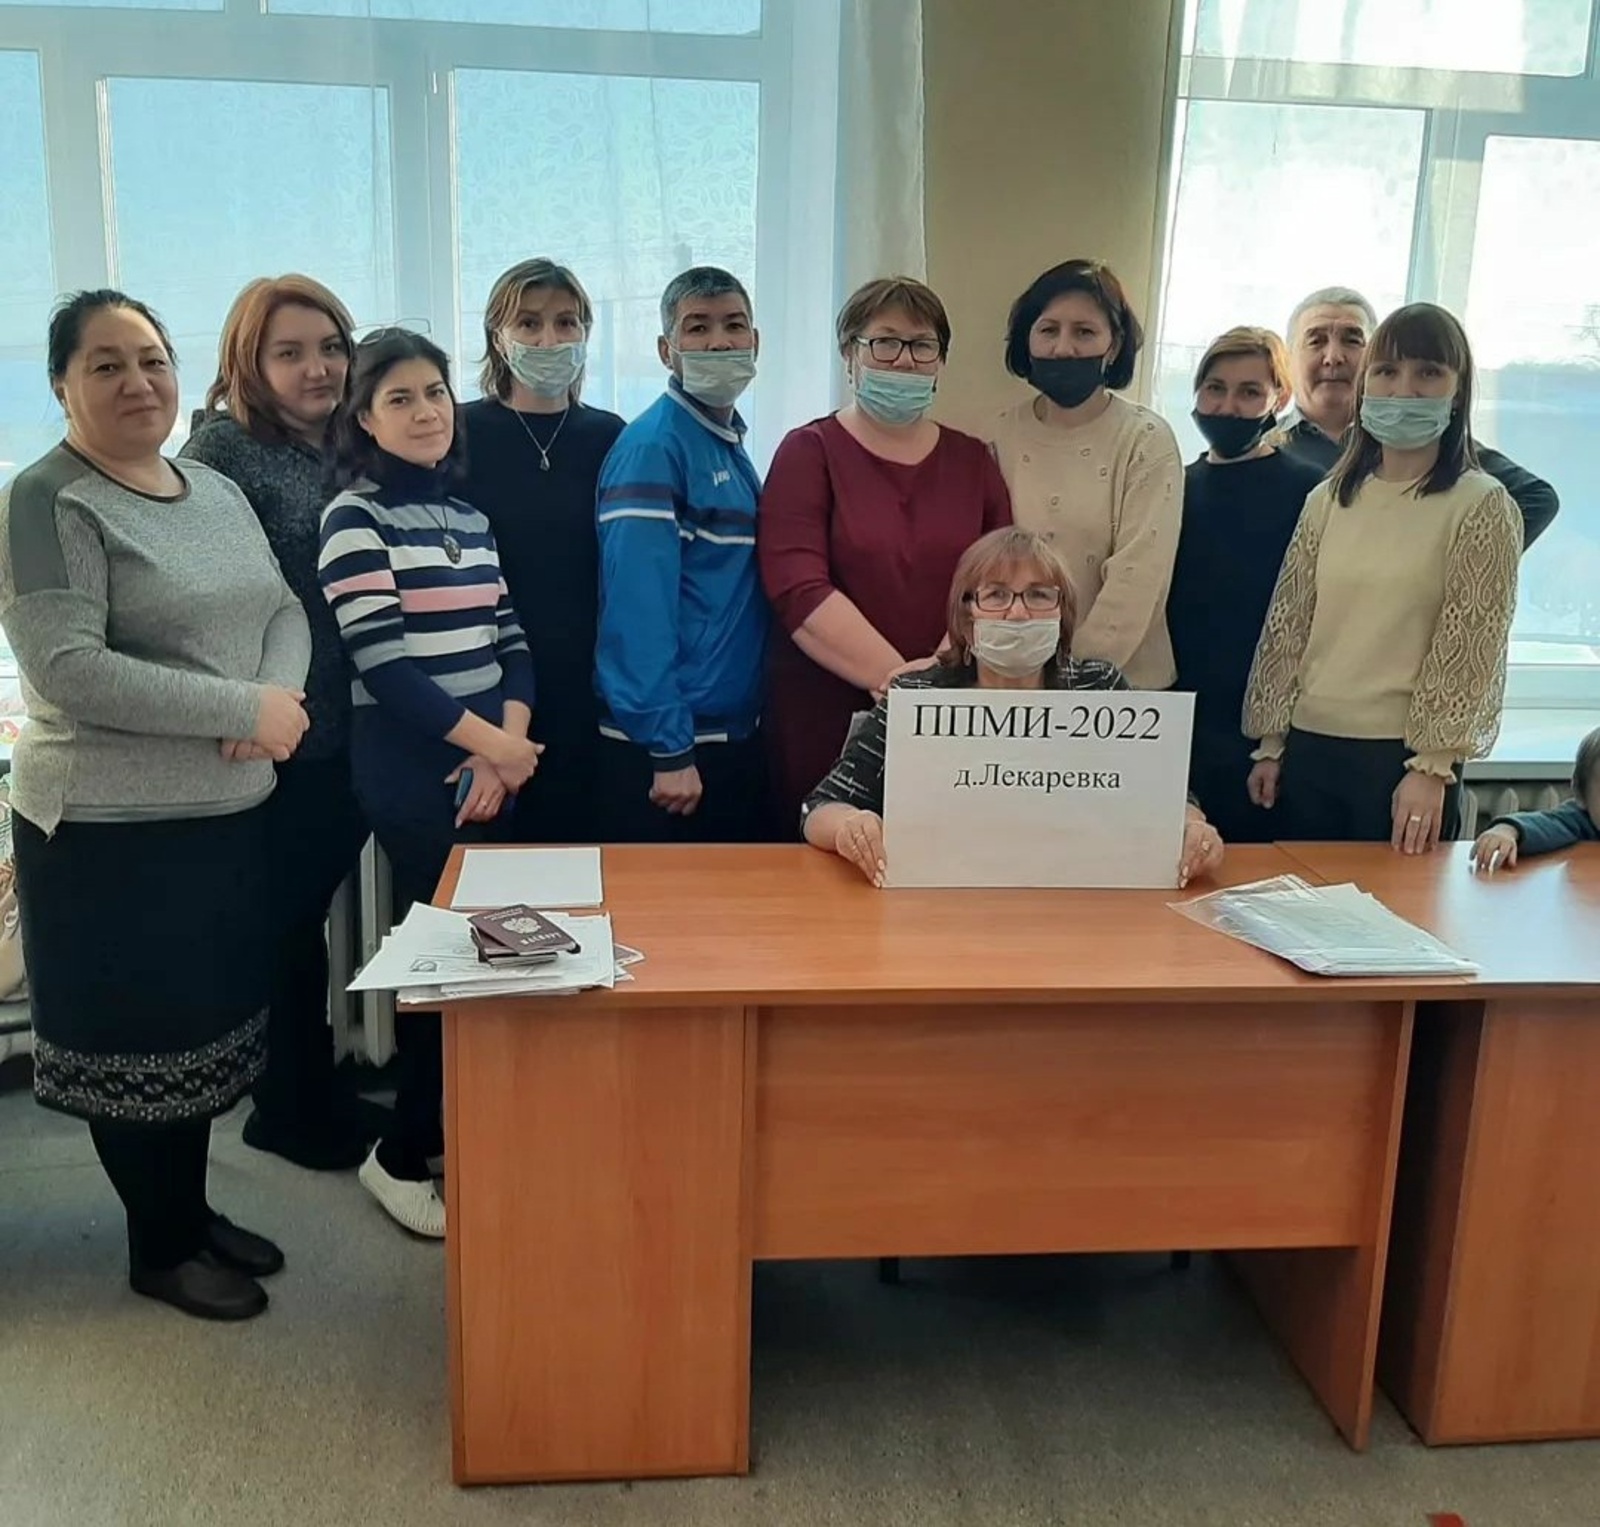 Жители Таптыковского сельсовета выбрали проект для участия в Программе поддержки местных инициатив 2022